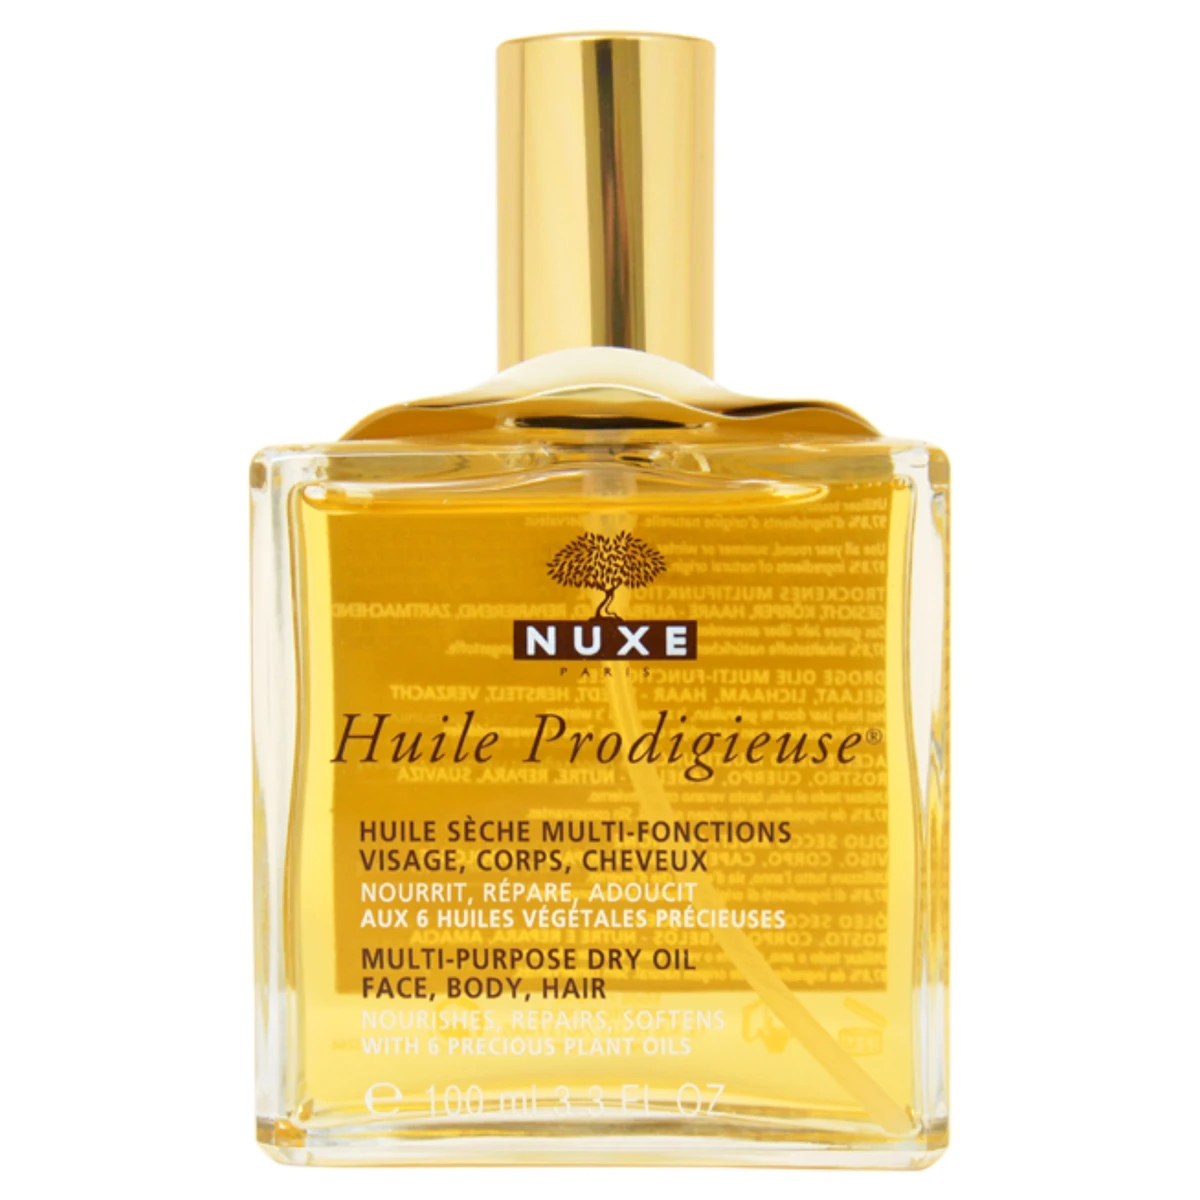 Nuxe Huile Prodigieuse Többfunkciós száraz olaj arcra, testre, hajra spray 50ml